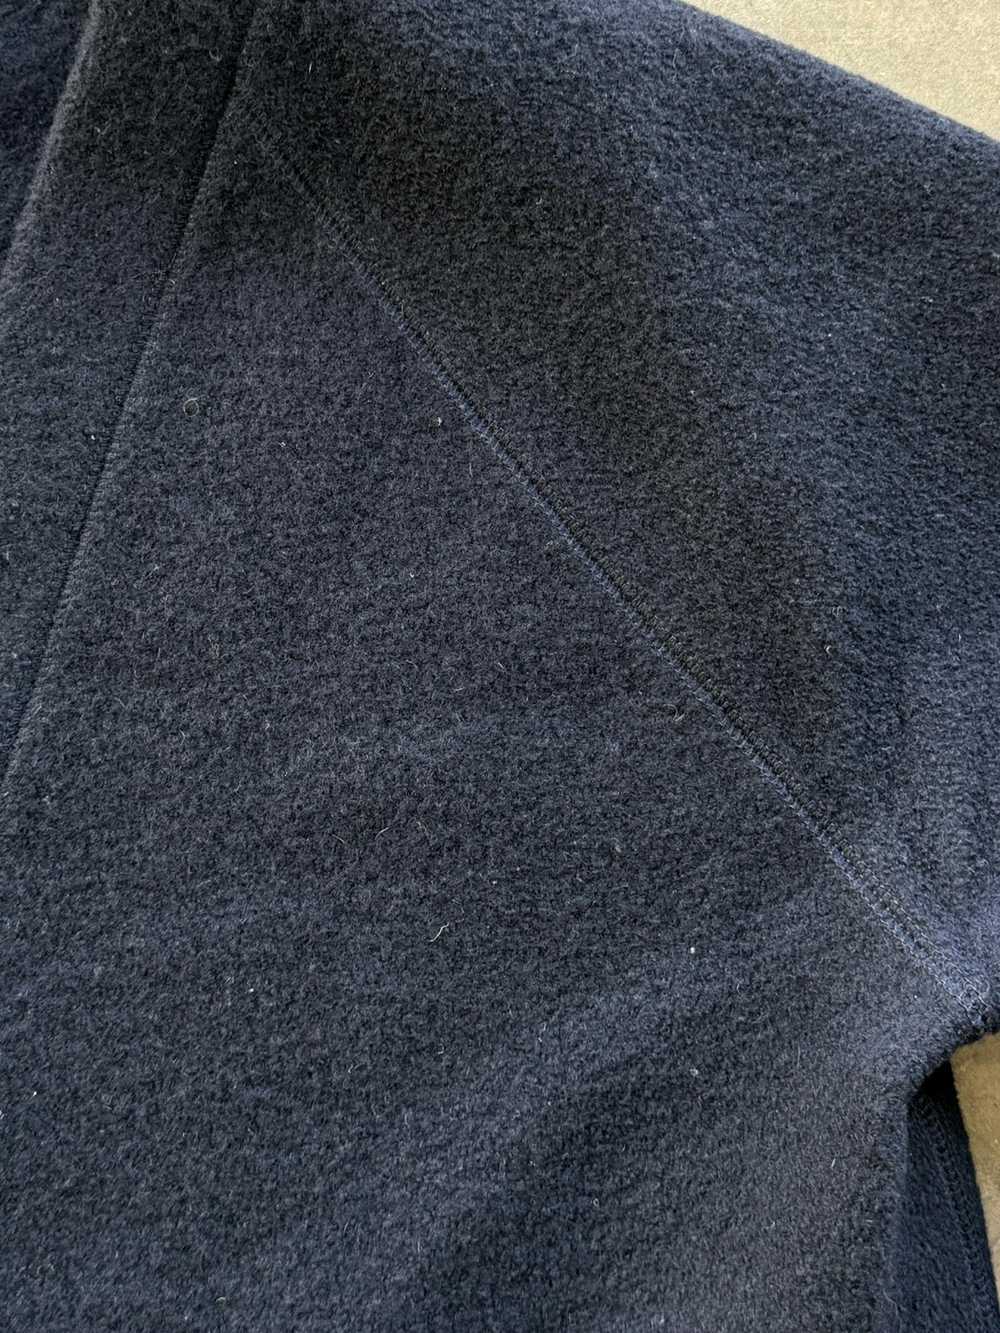 Billy Reid Billy Reid Boiled Merino Wool Cardigan - image 5